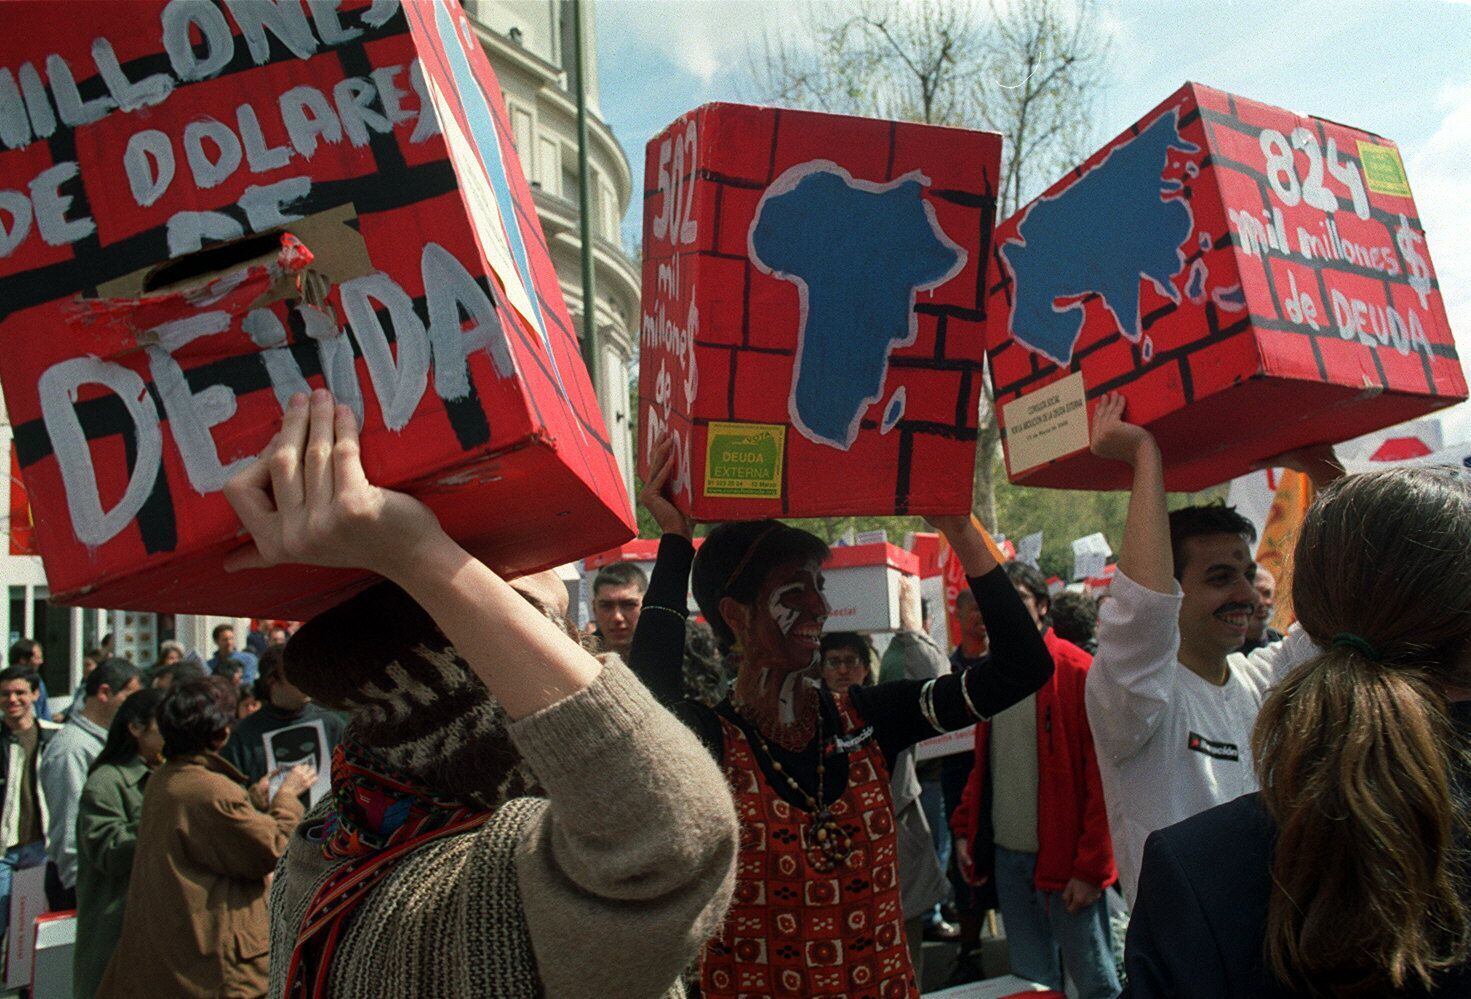 Manifestación para pedir la condonación de la deuda externa a países en desarrollo, en Madrid, en 2000, organizada por la Plataforma 0,7%.